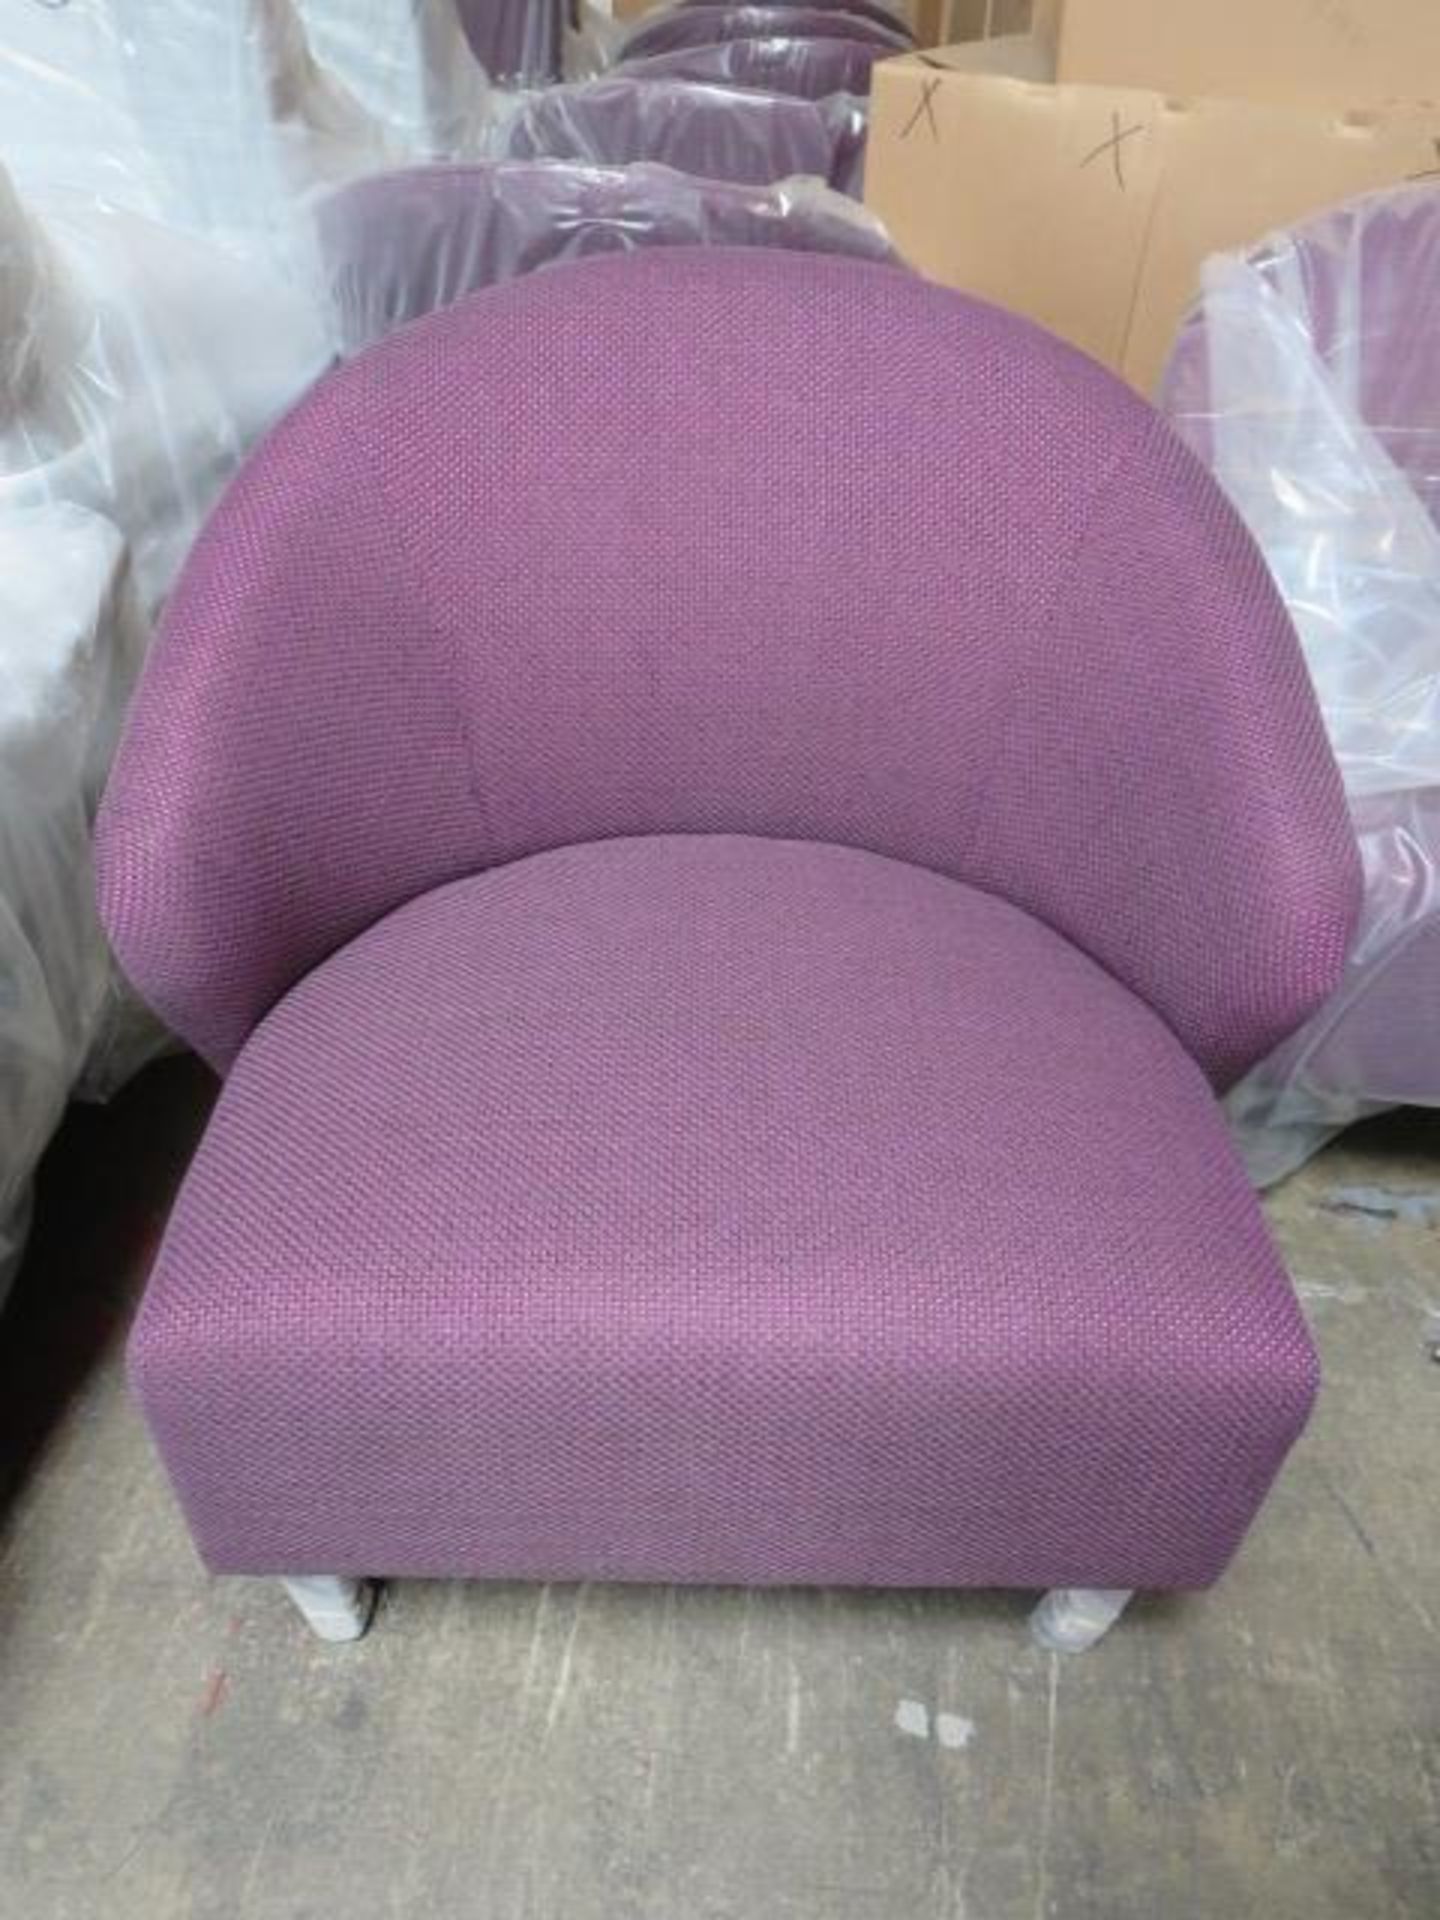 Purple Lounge Chairs